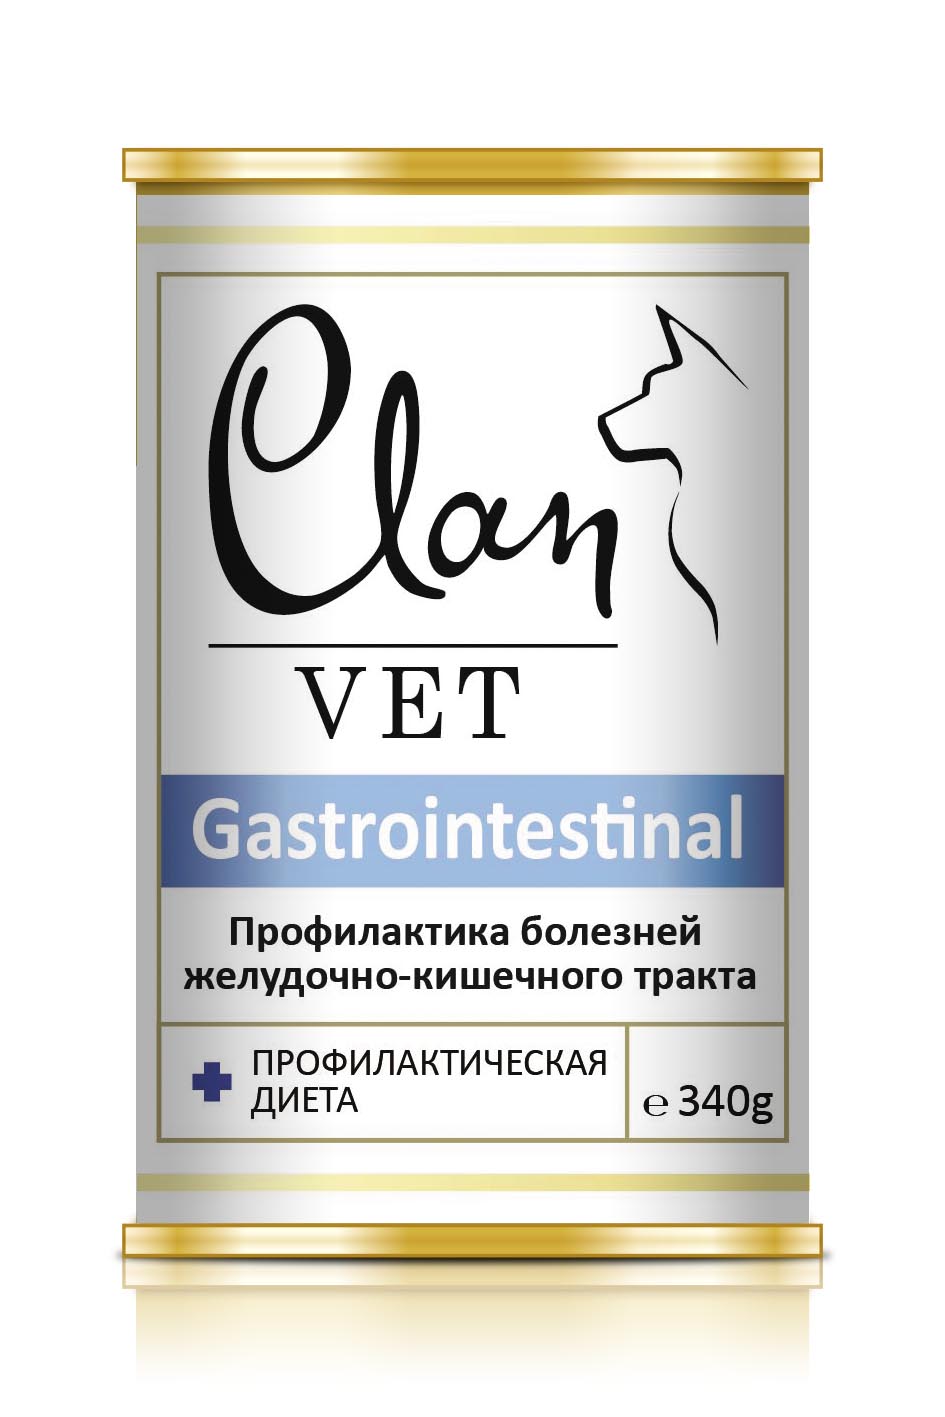 Корм для собак Clan vet gastrointestinal профилактика болезней жкт 340 г бан.